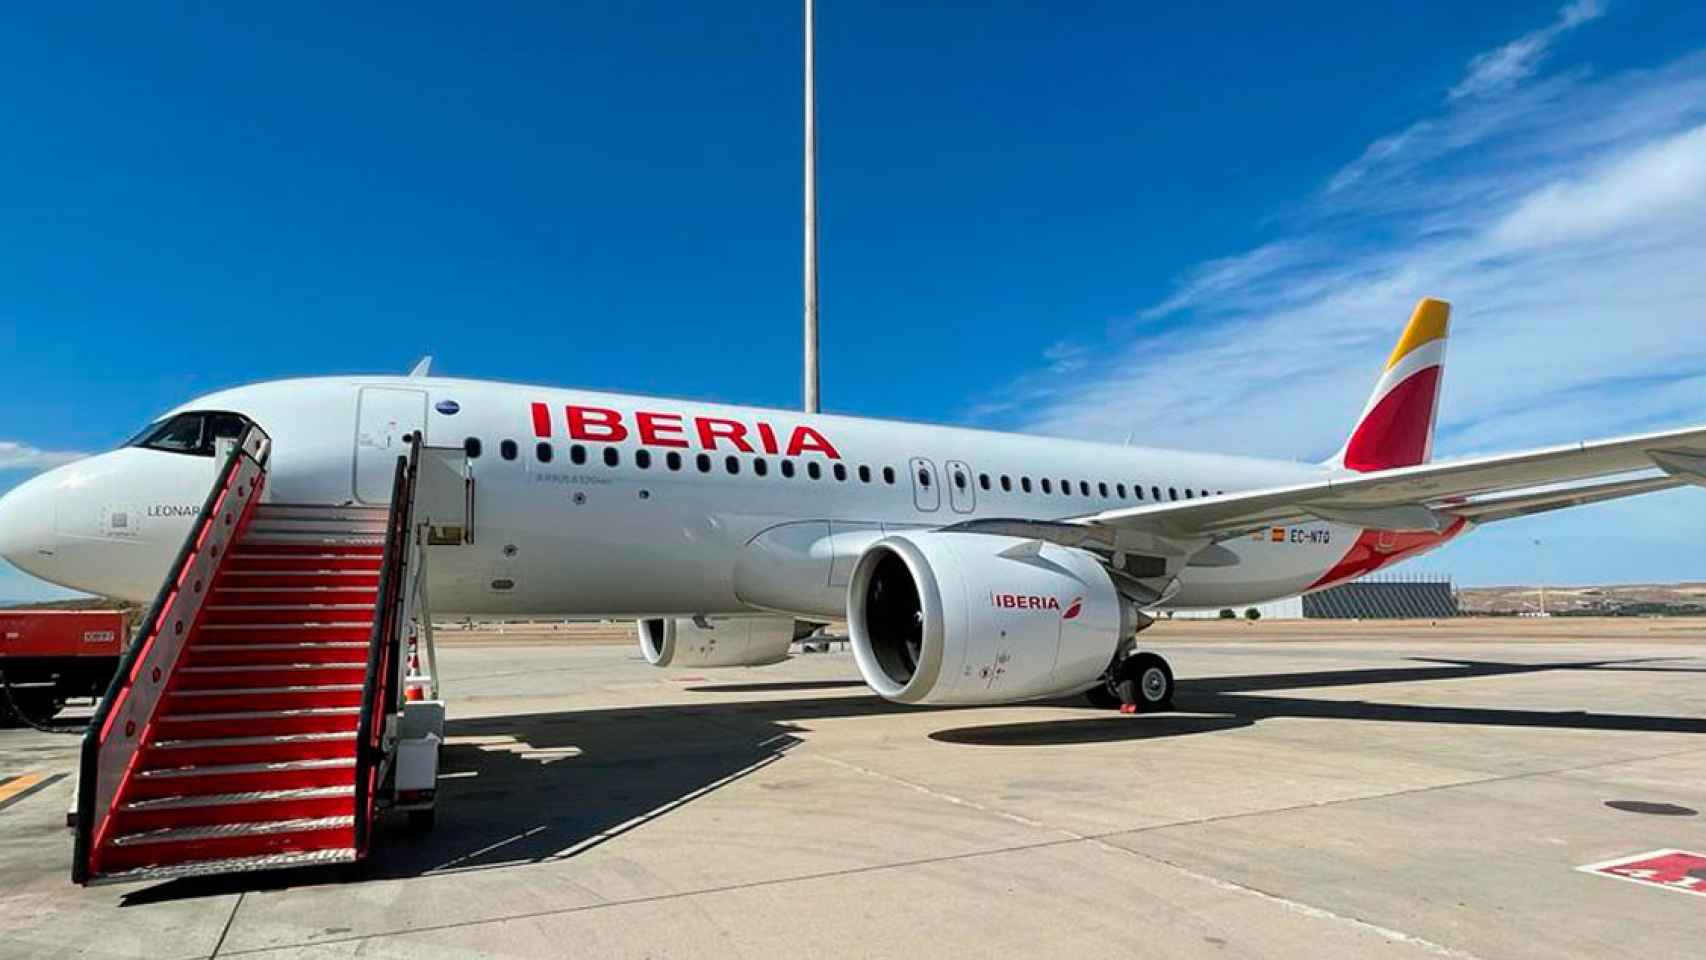 Uno de los aviones de la flota de la principal aerolínea de España, Iberia / IBERIA